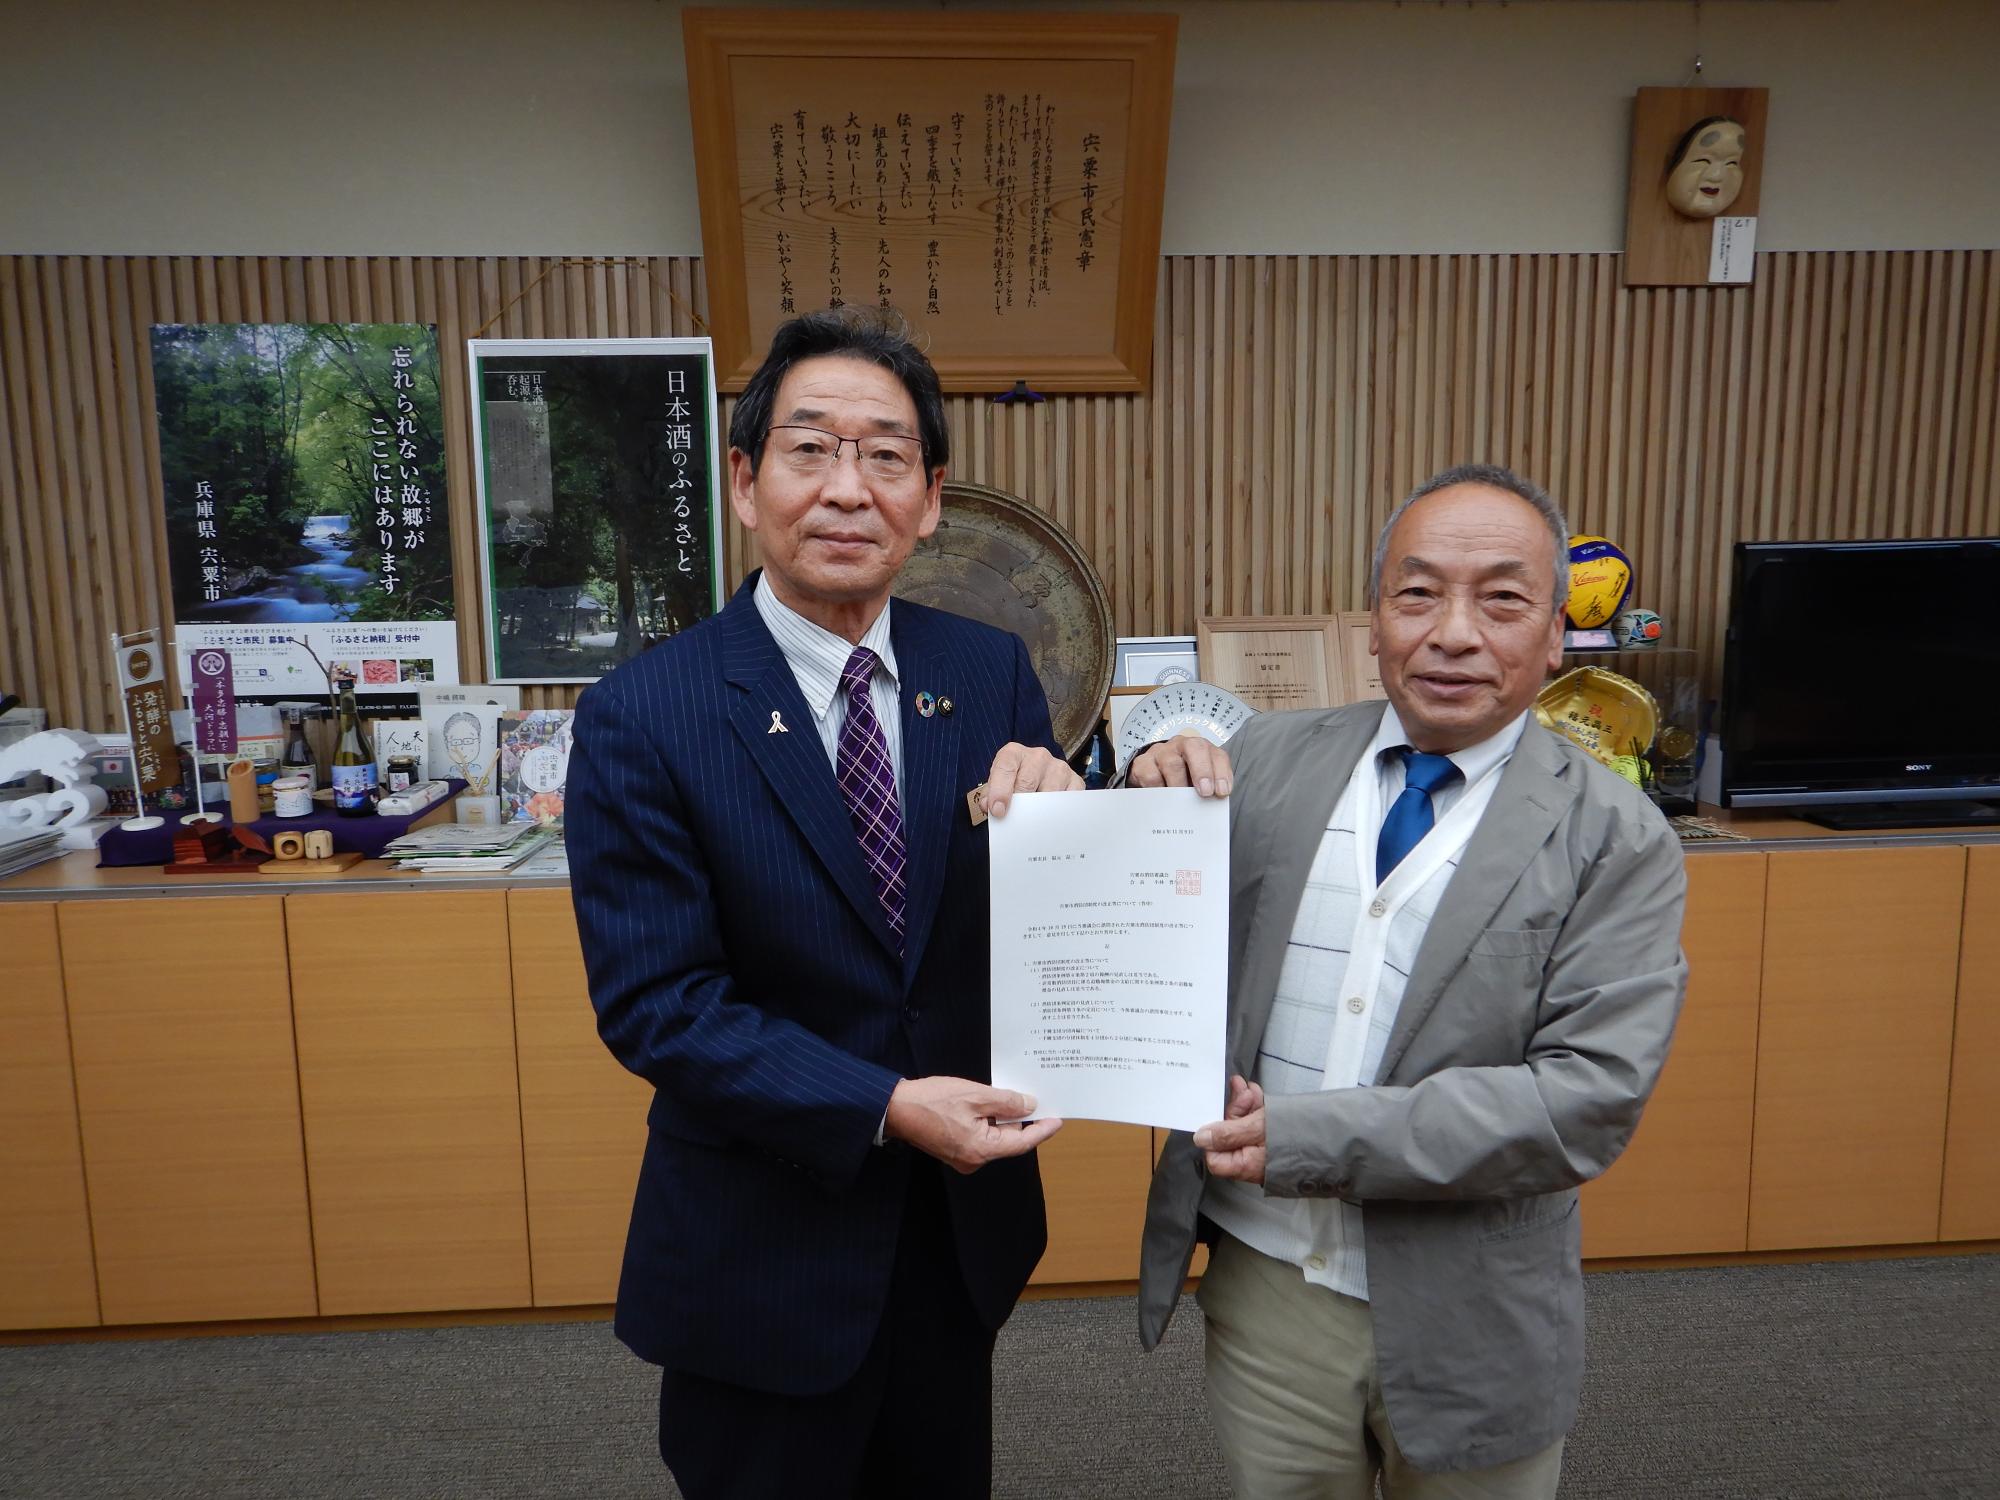 小林会長と福元市長が二人で答申書を持って前を向いている写真